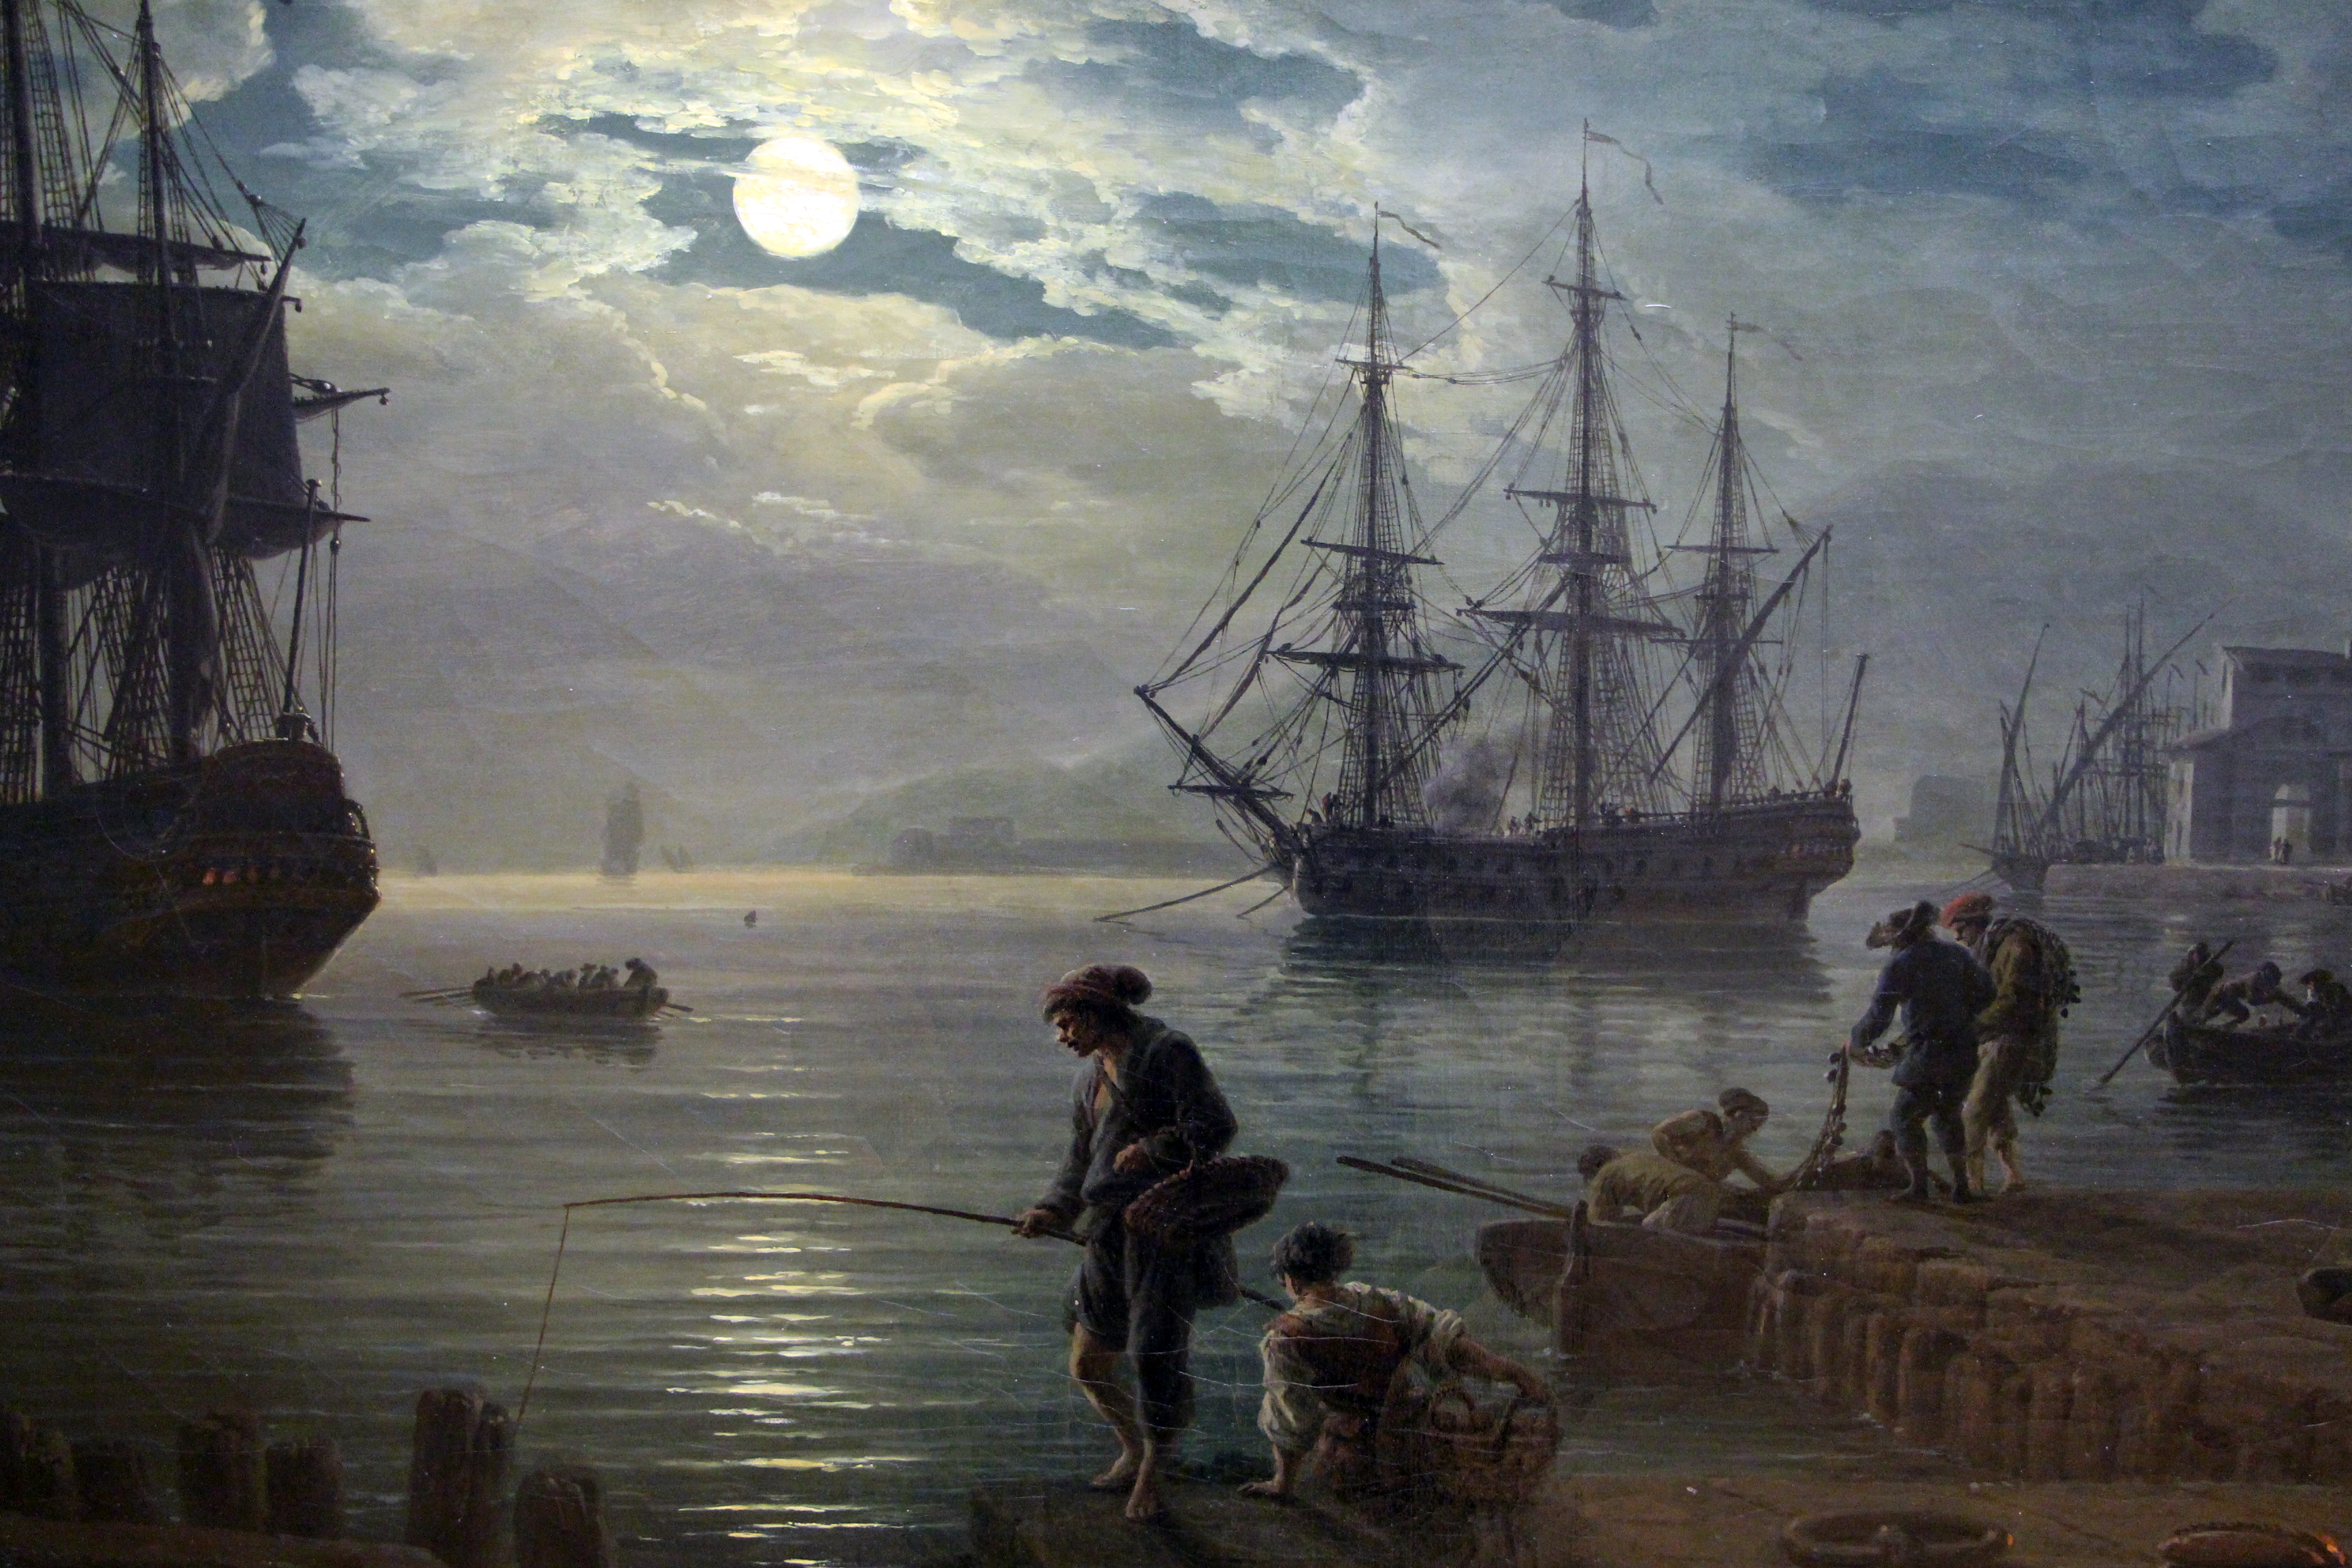 Joseph vernet, la notte, un porto di mare al chiaro di luna, 1771, 02